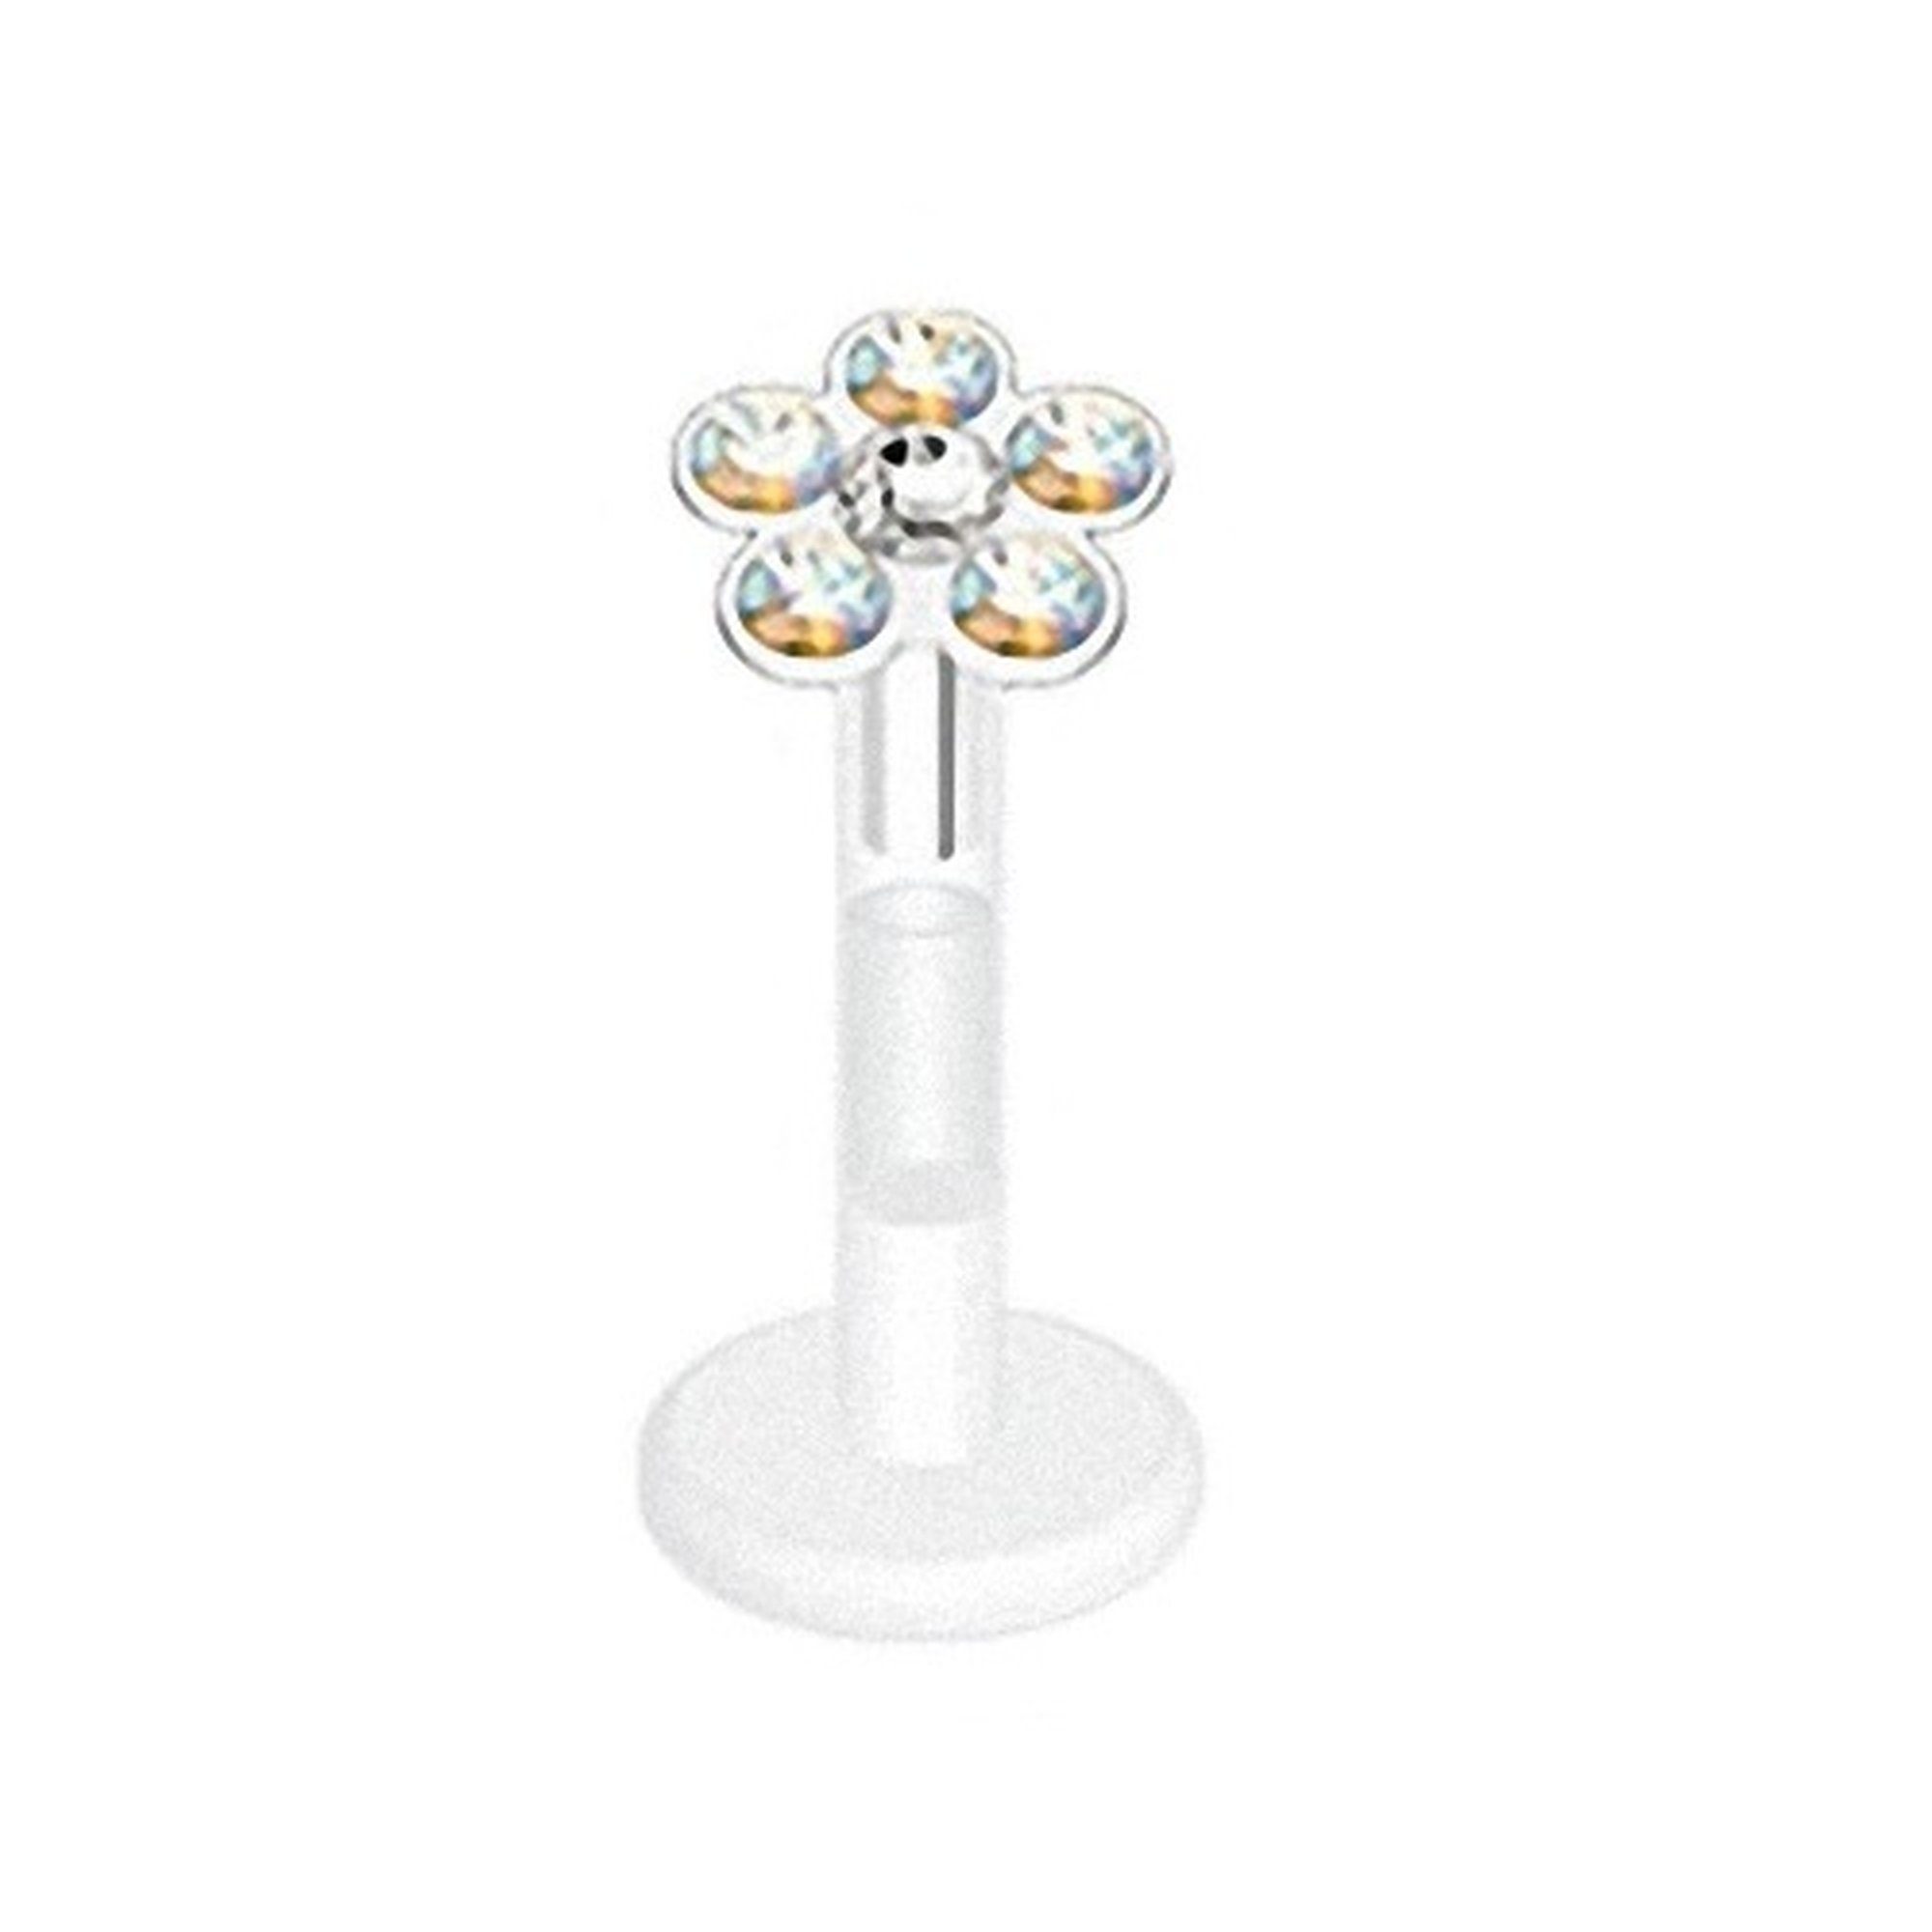 Taffstyle Piercing-Set Piercing Bioflex Monroe Multi Kristall Blume 8mm, Lippenpiercing Lippe Schmuck Bioflex Monroe Multi Kristall Blume 8mm Rainbow - Clear